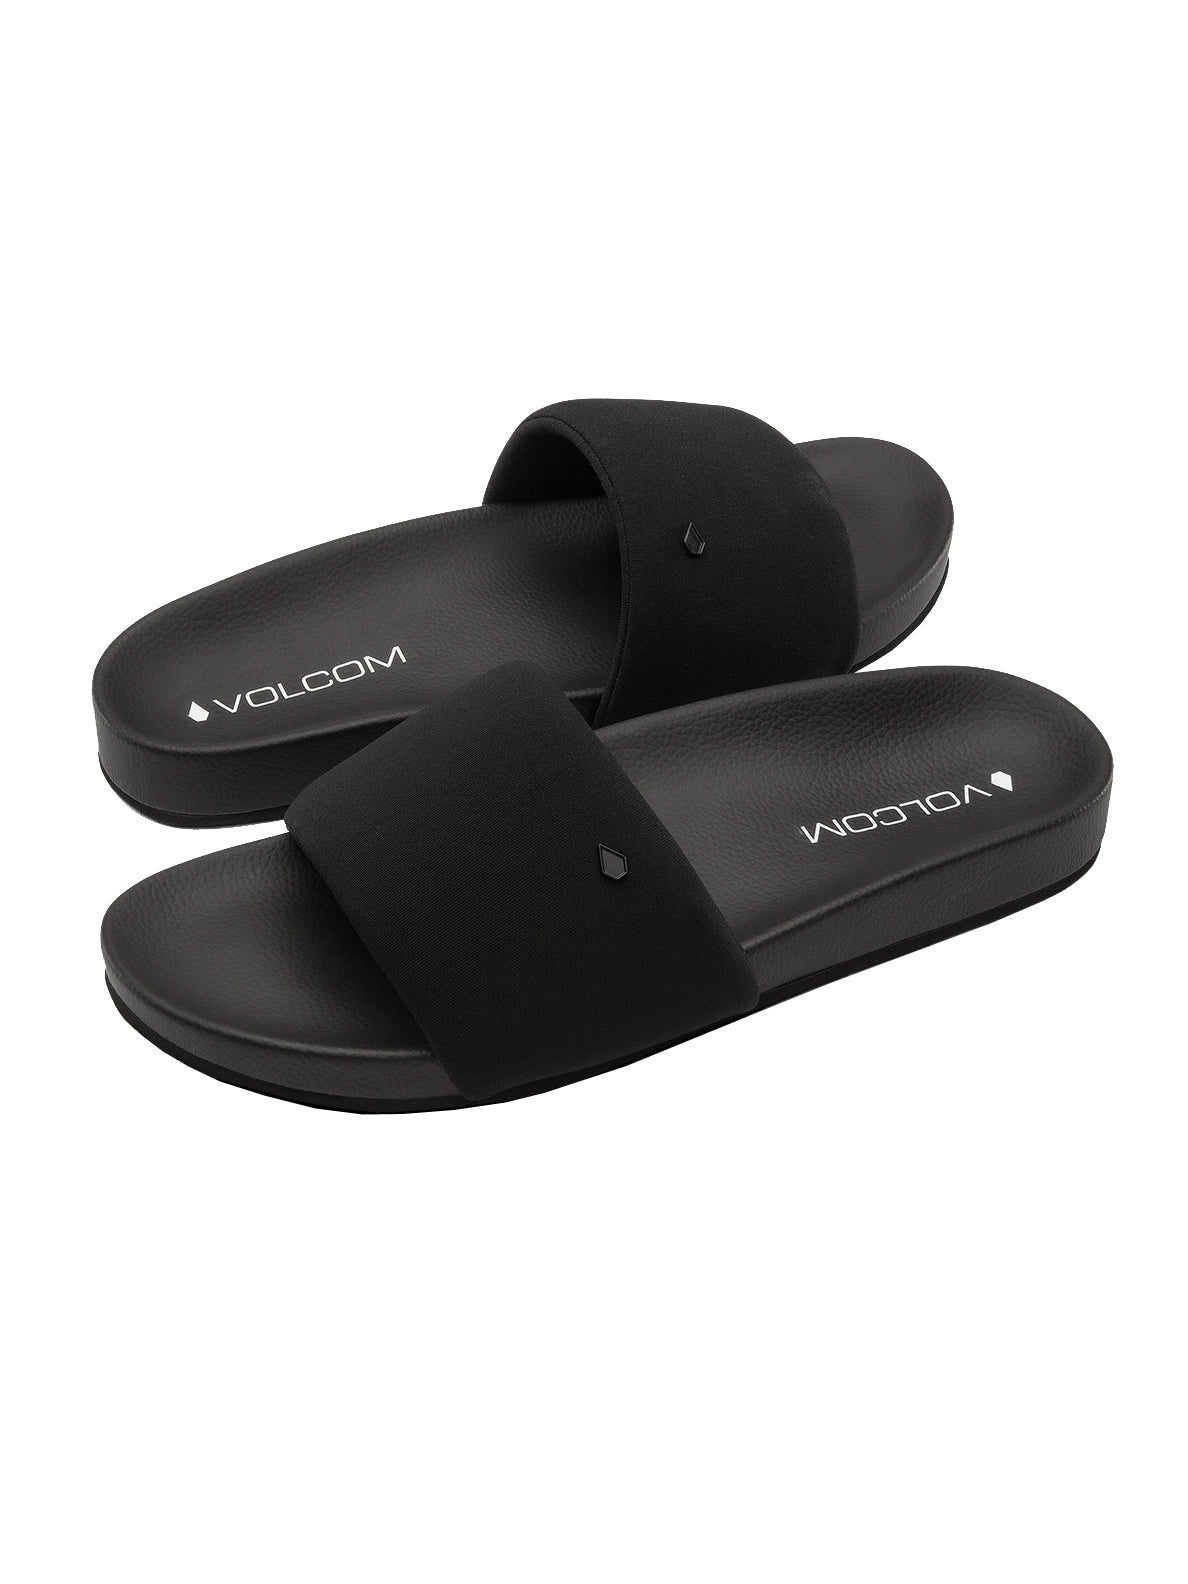 Volcom Cool Slide Womens Sandal BLK-Black 10